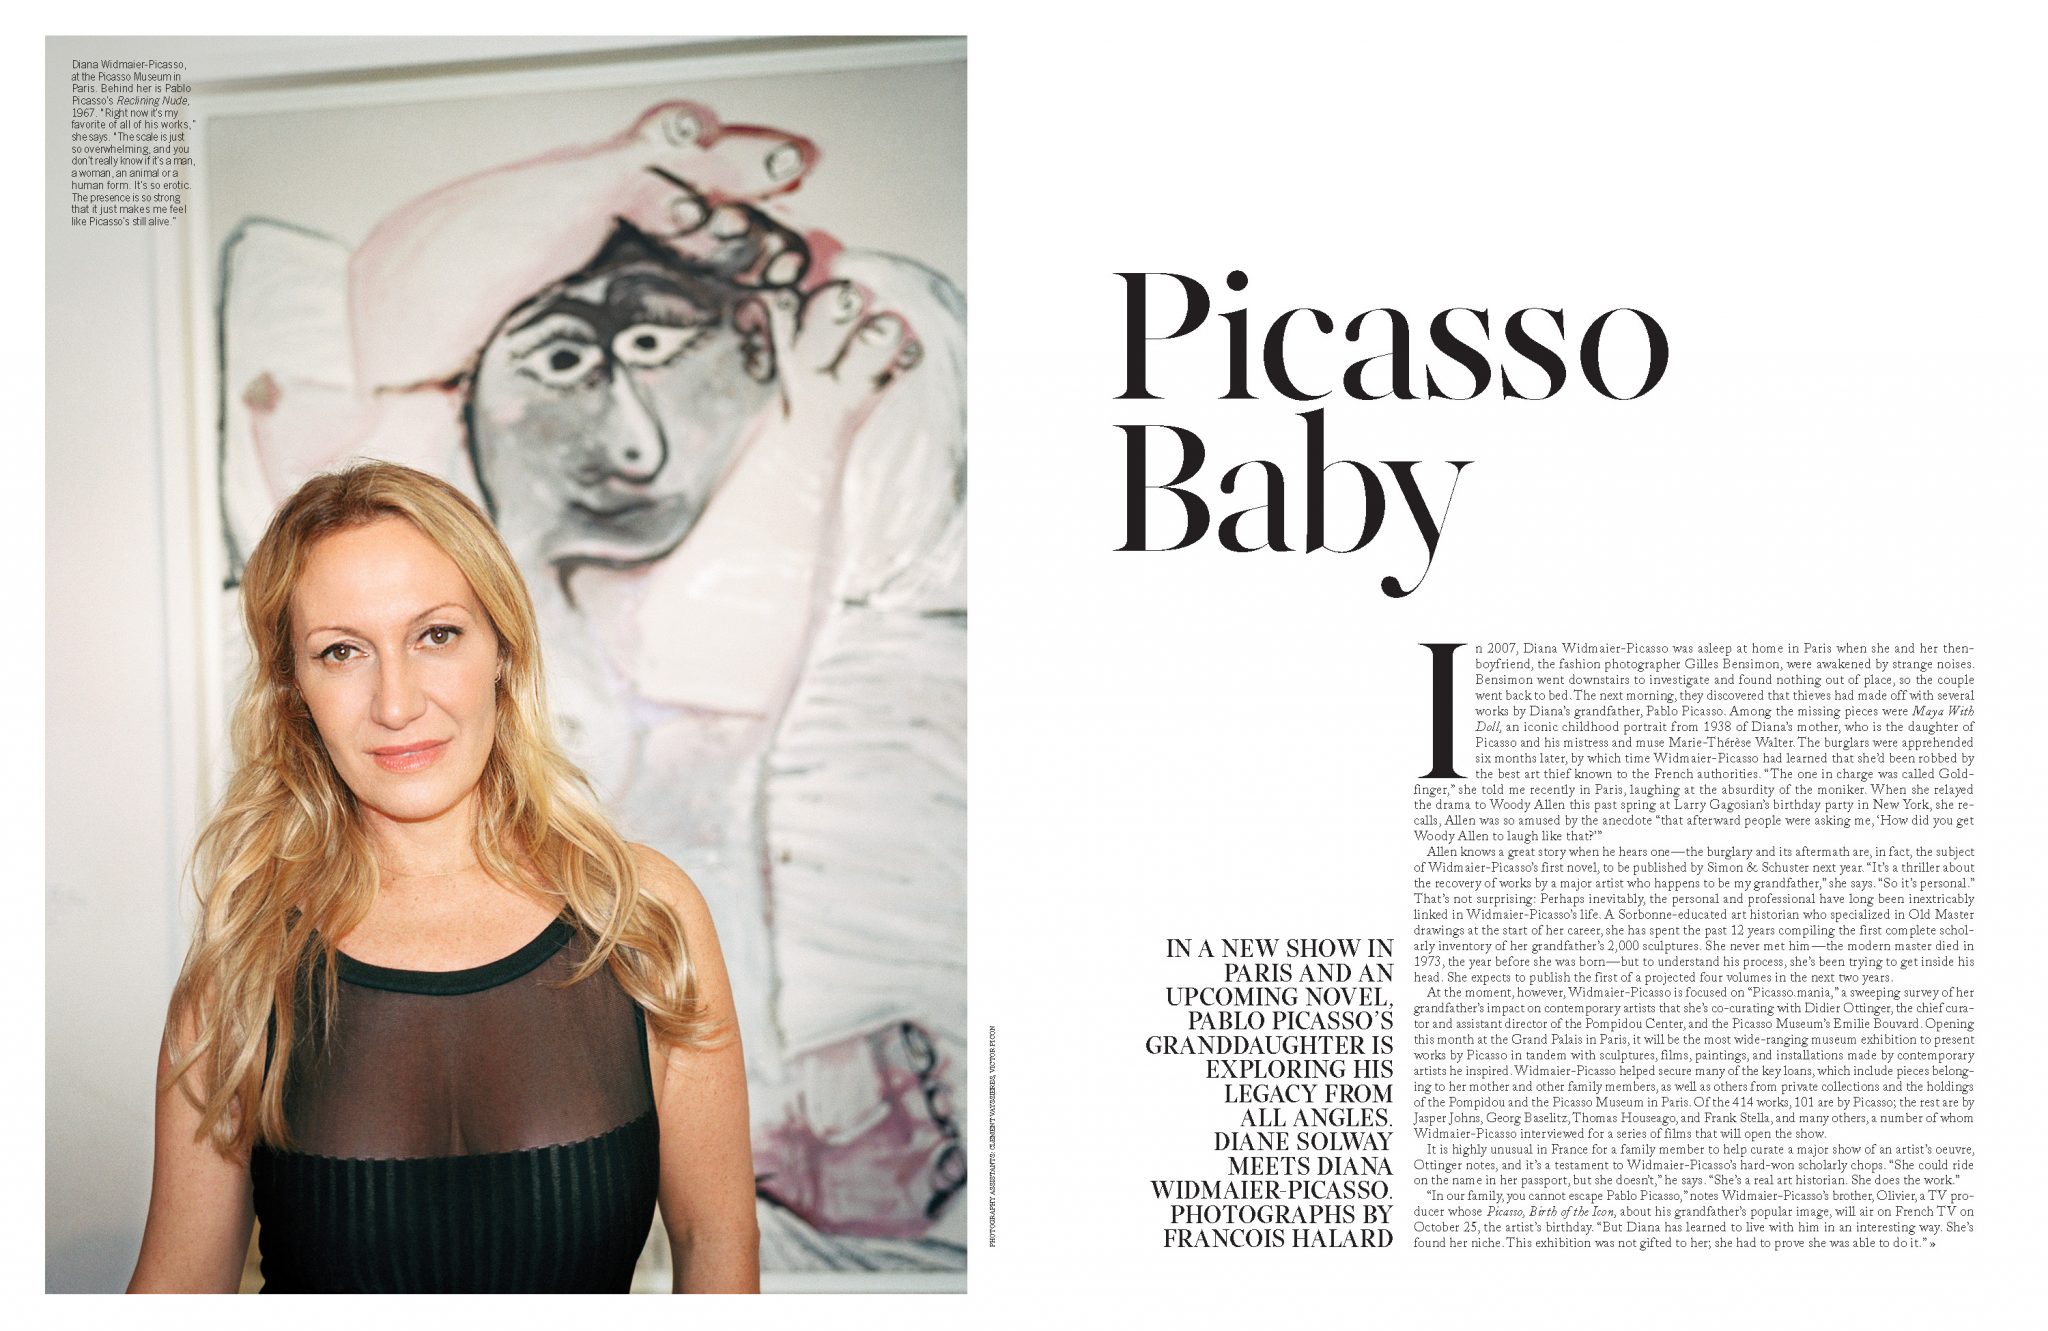 François Halard | W magazine: Picasso Baby | 1